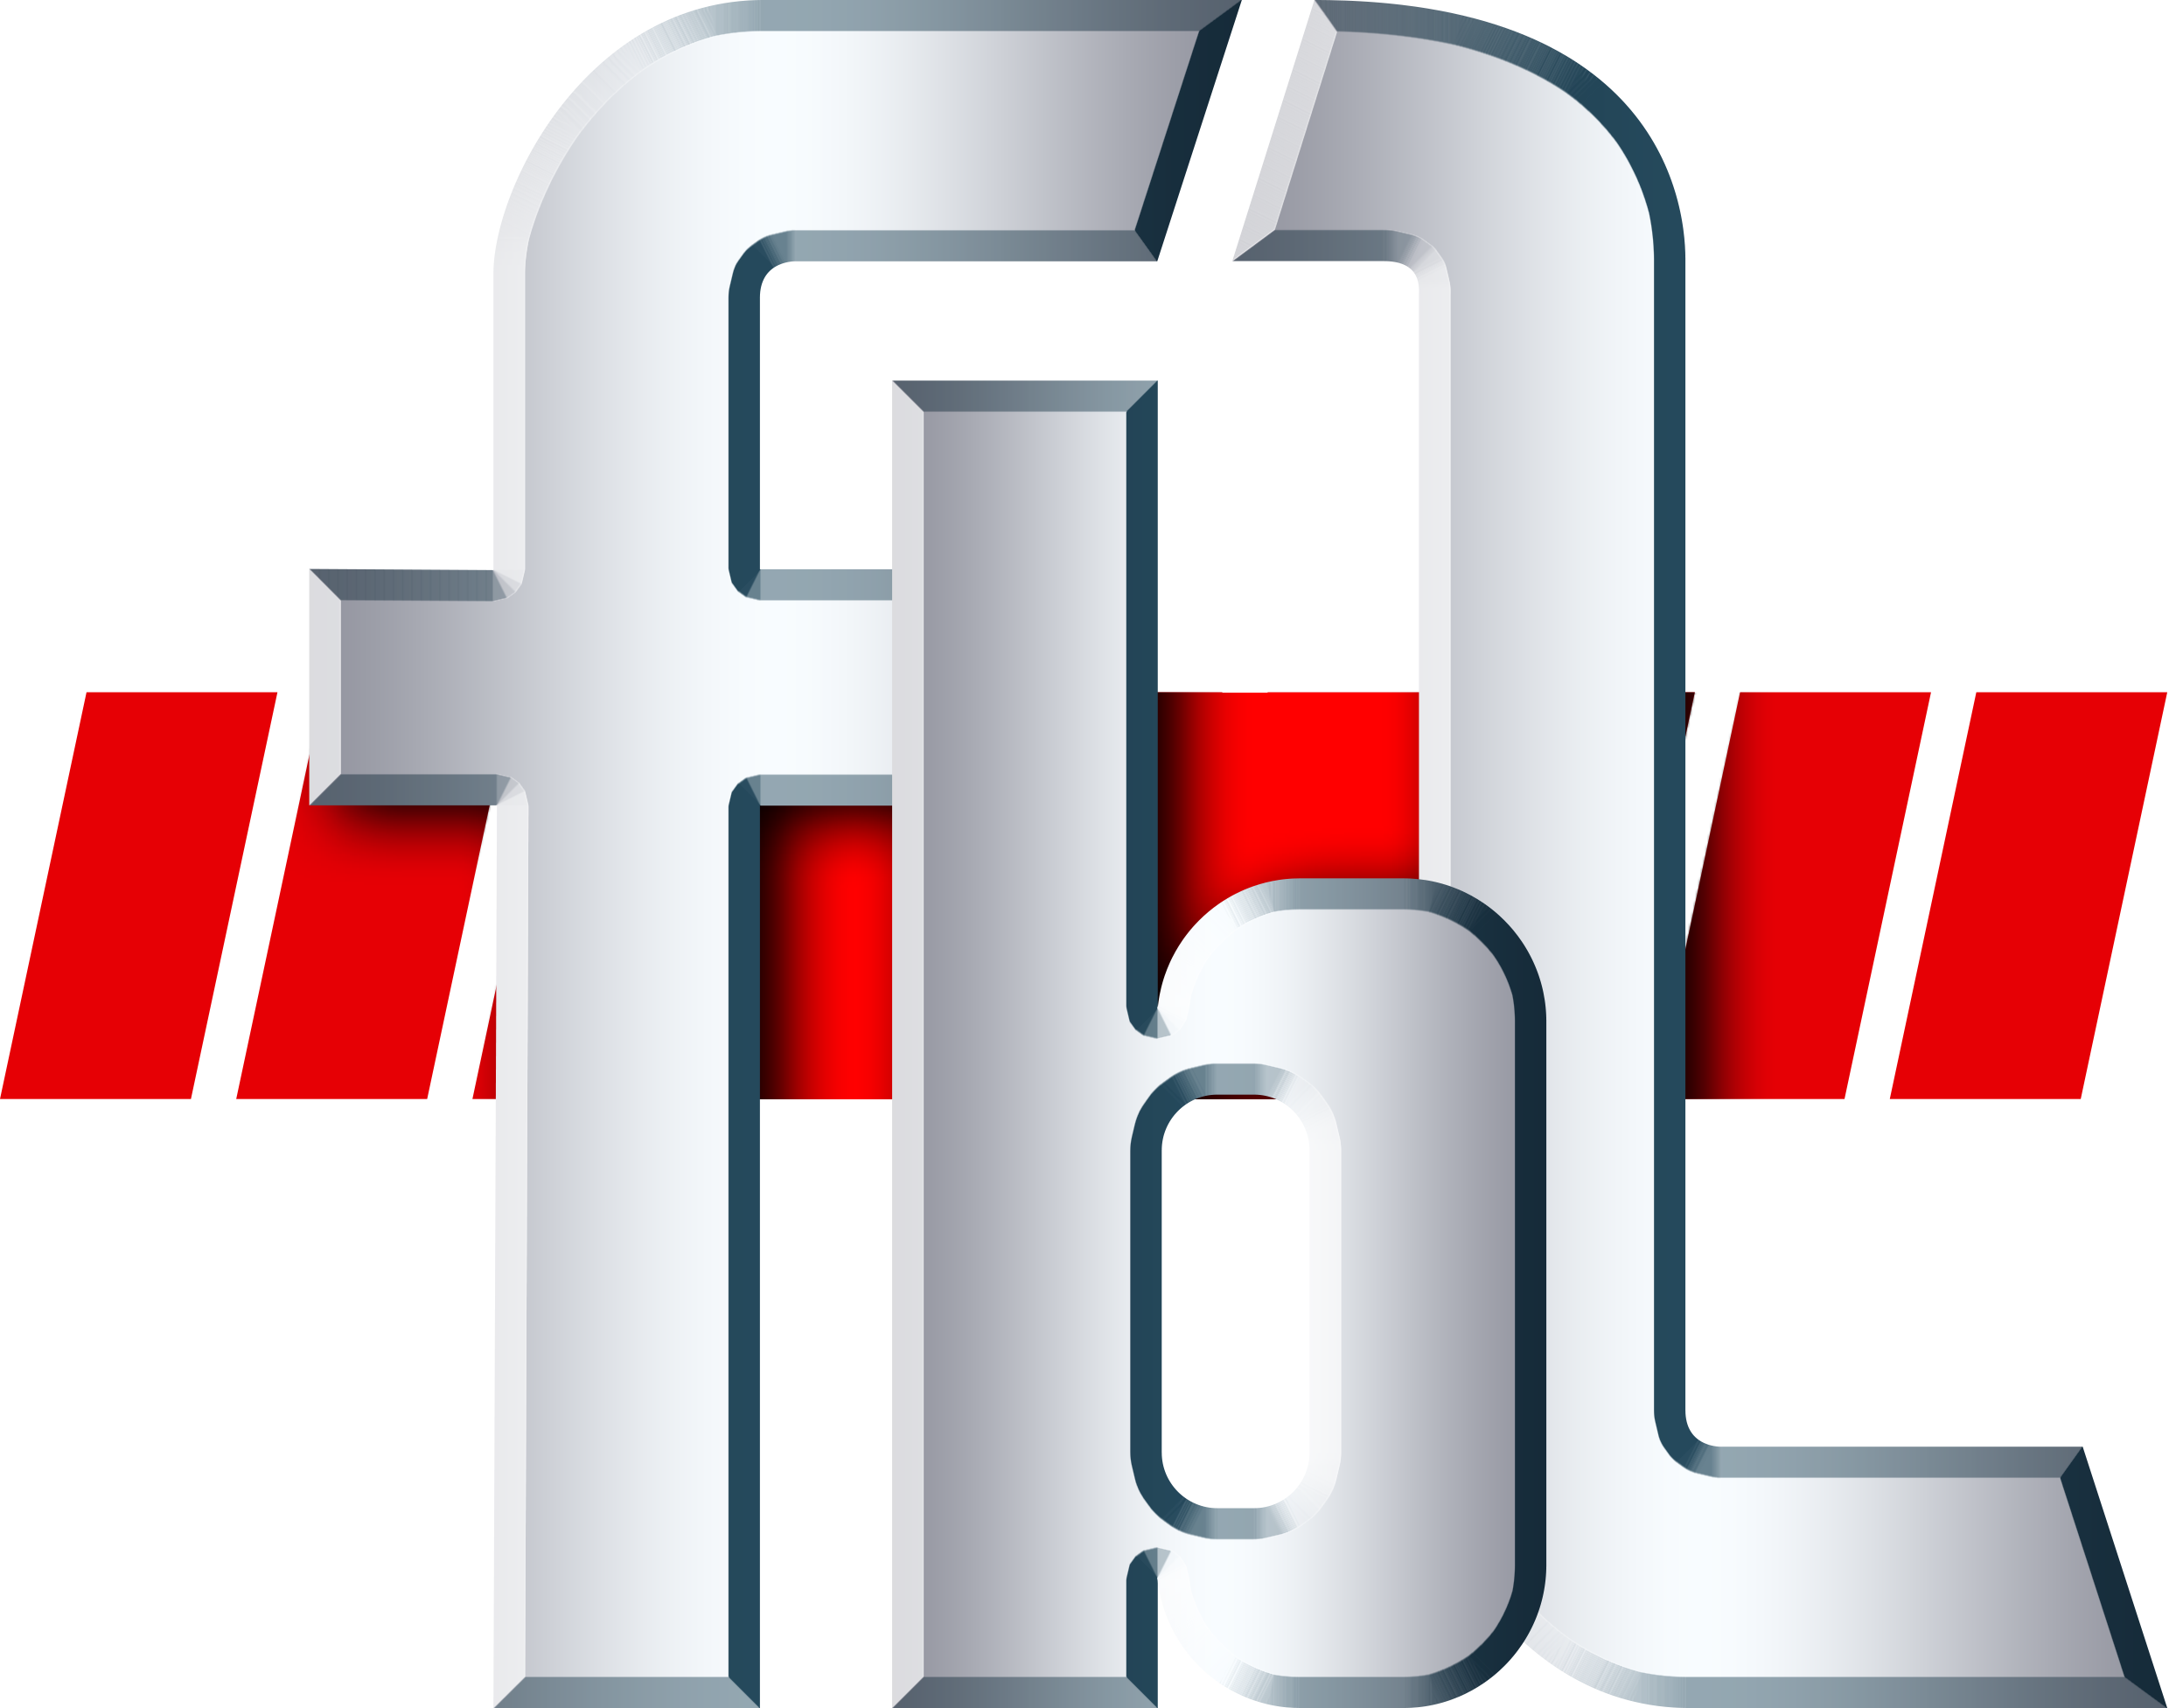 fbl_logo_2